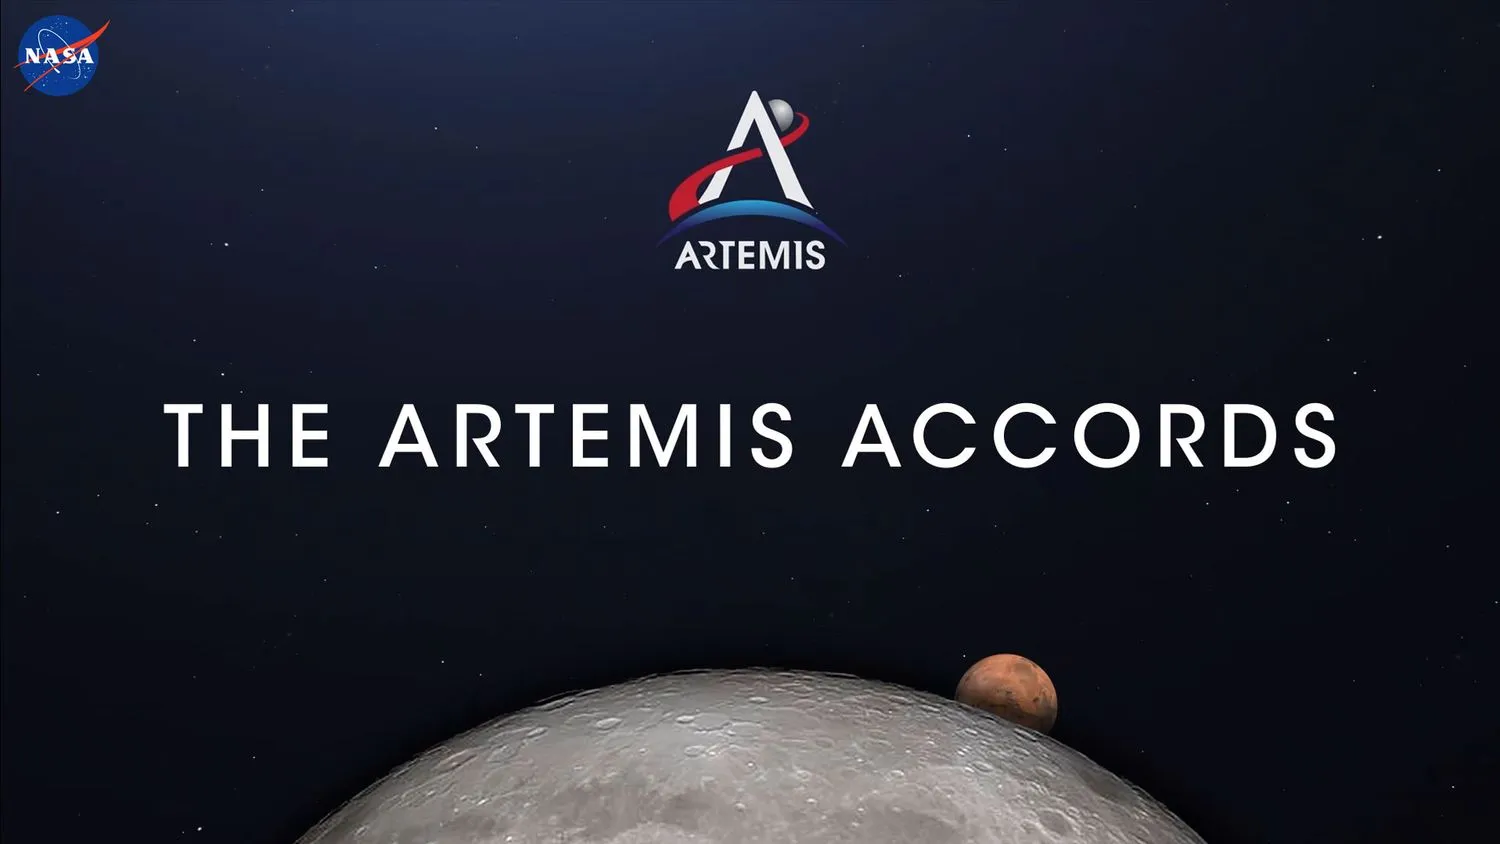 Mehr über den Artikel erfahren Zusammenarbeit auf dem Mond: Reichen die Artemis-Vereinbarungen aus?